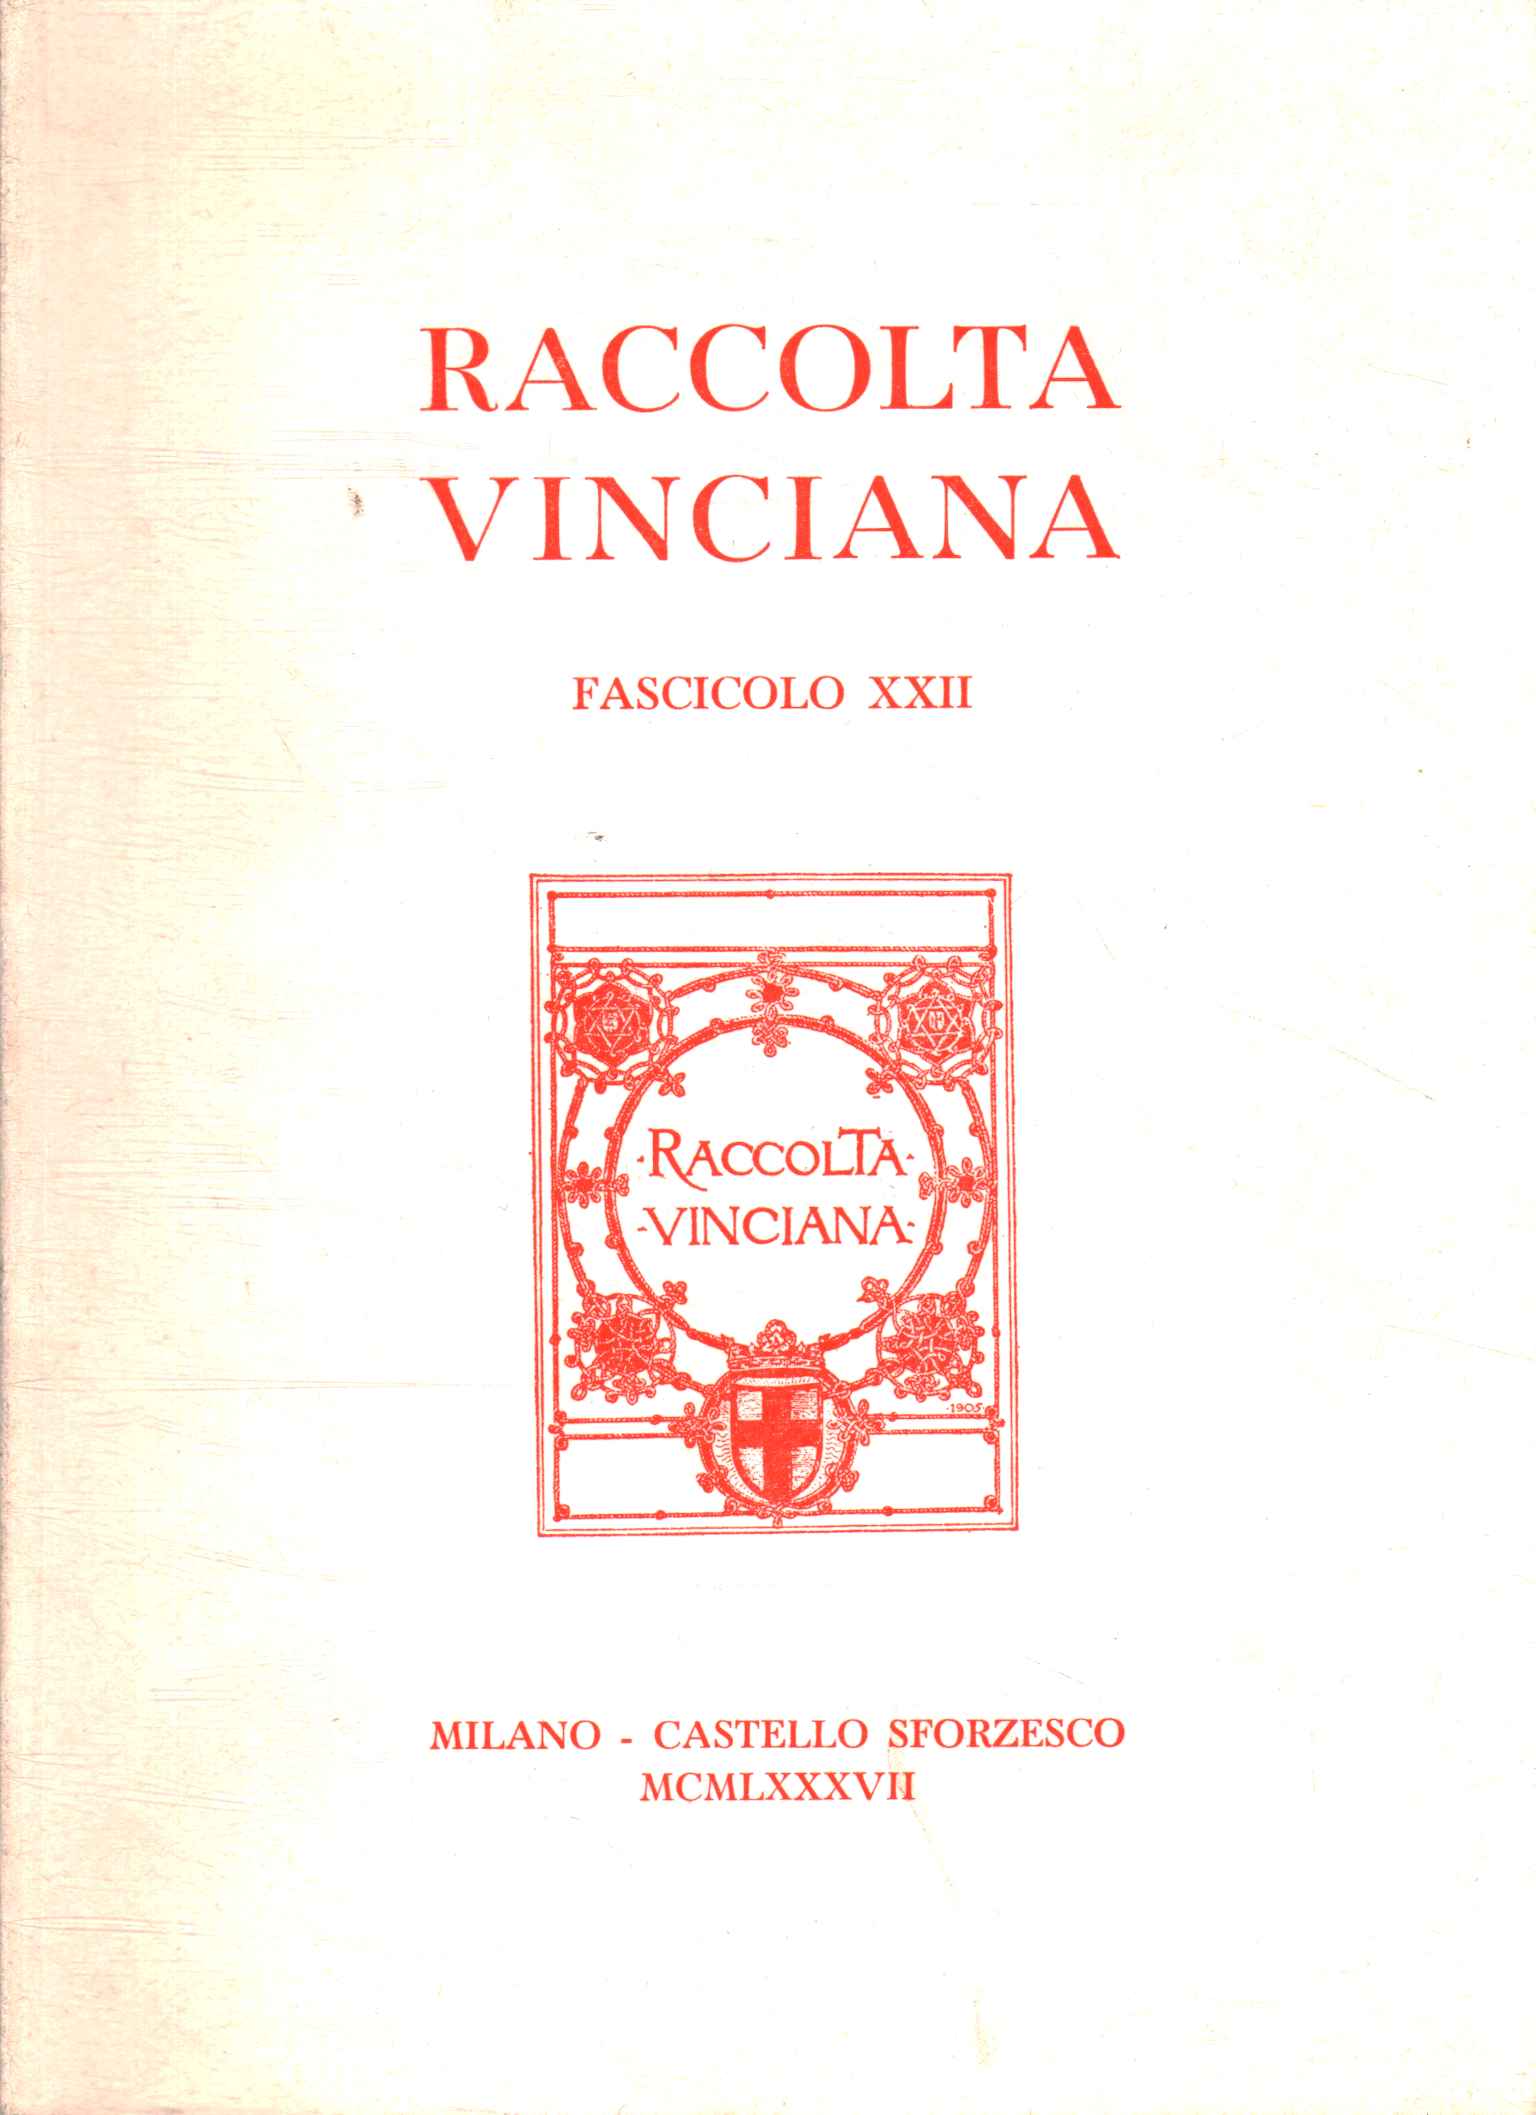 Colección Vinciana Número XXII, Colección Vinciana Número XXII, Colección Vinciana Número XXII, Colección Vinciana Número XXII